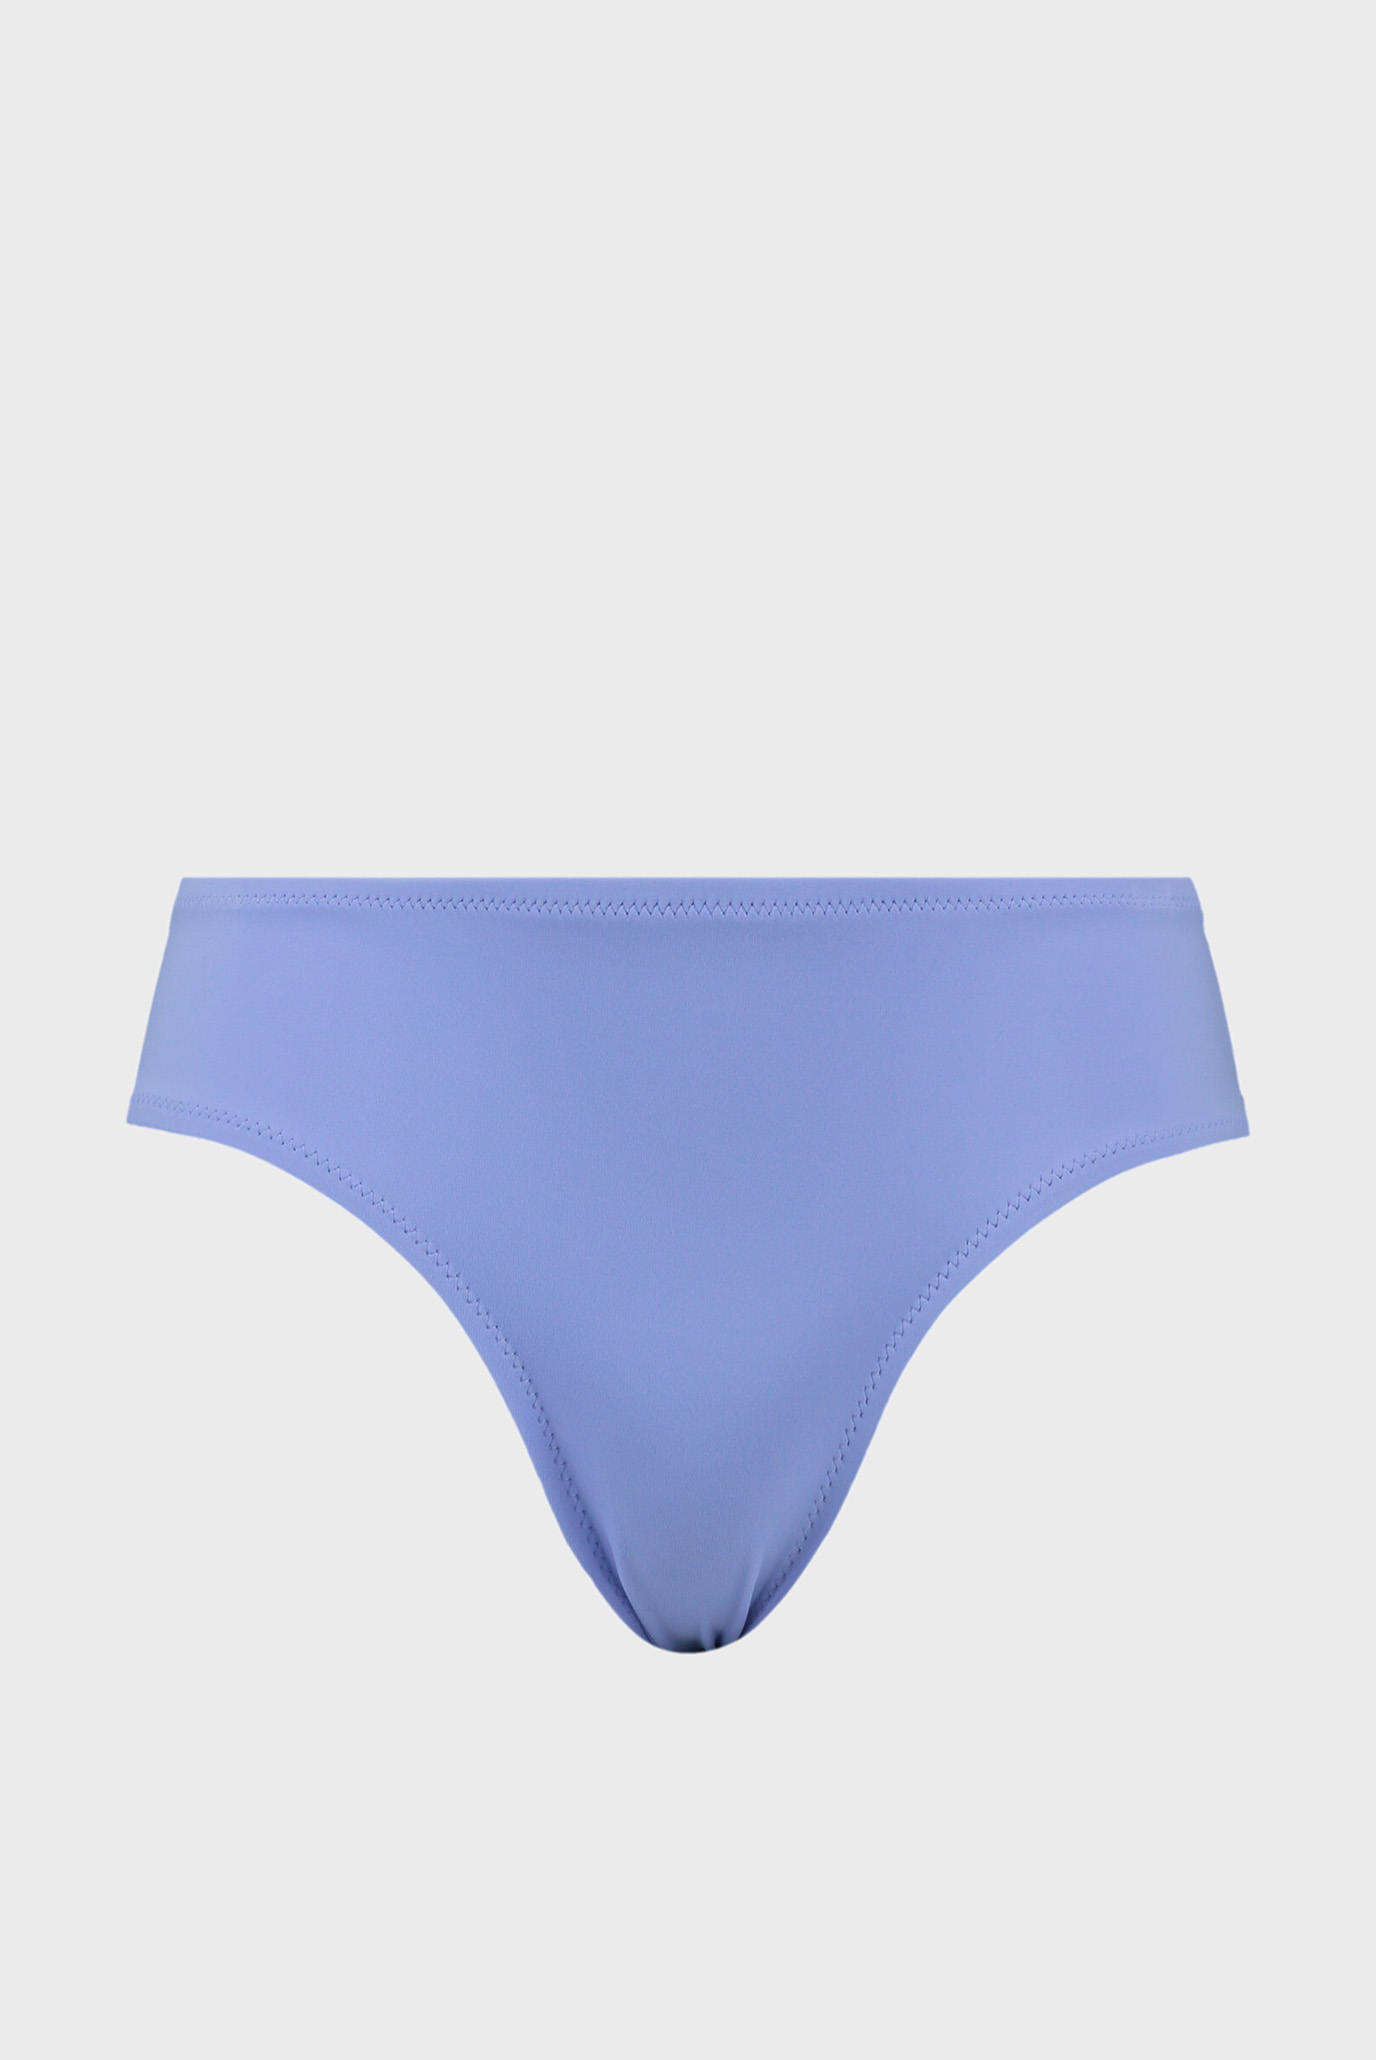 Женские синие трусики от купальника Swim Women’s Hipster Bottom 1